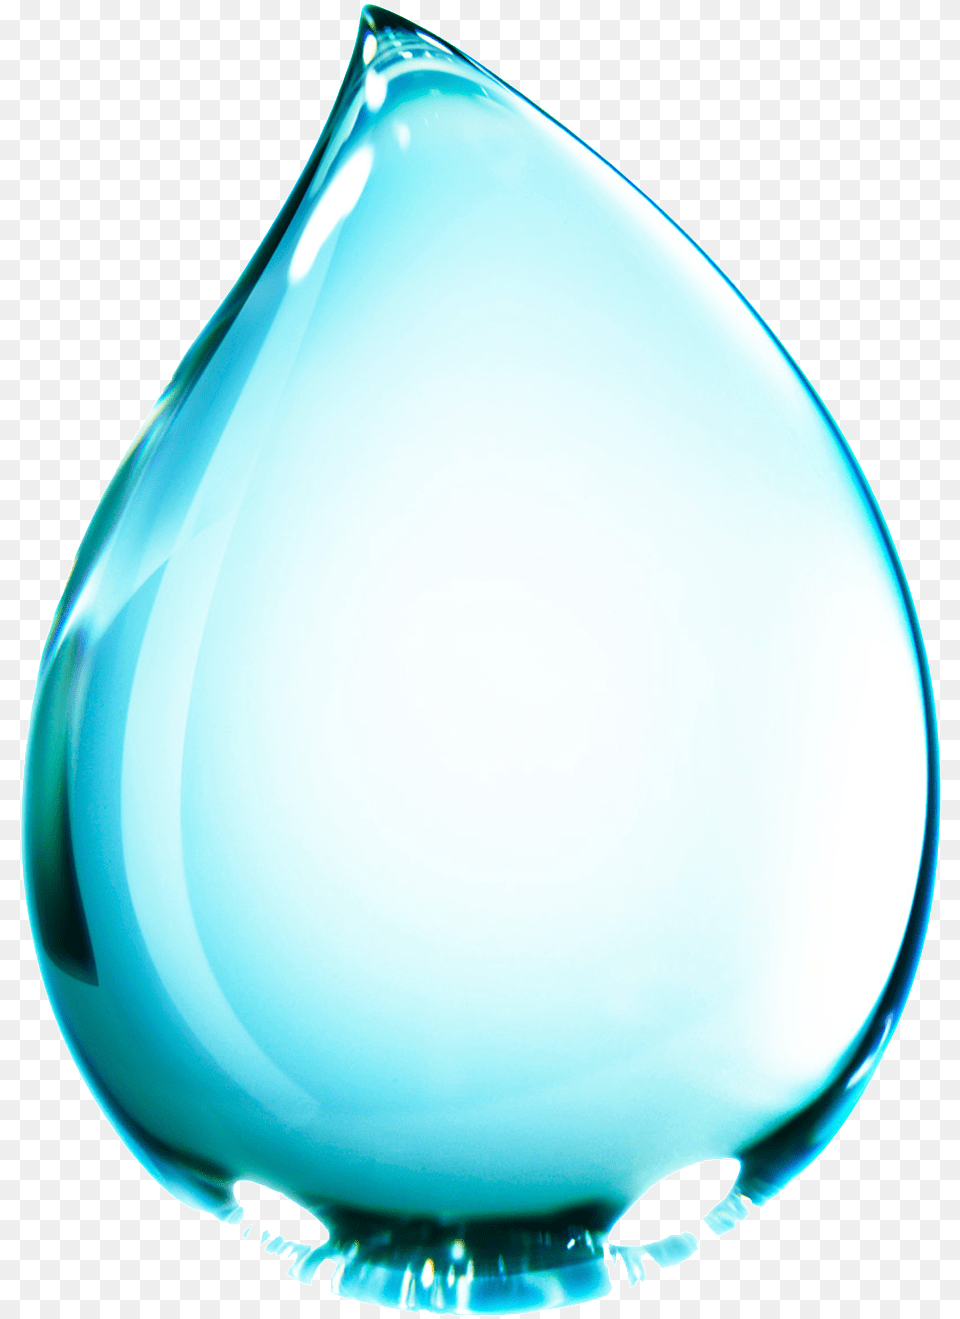 Glass, Droplet, Jar, Pottery, Vase Free Transparent Png